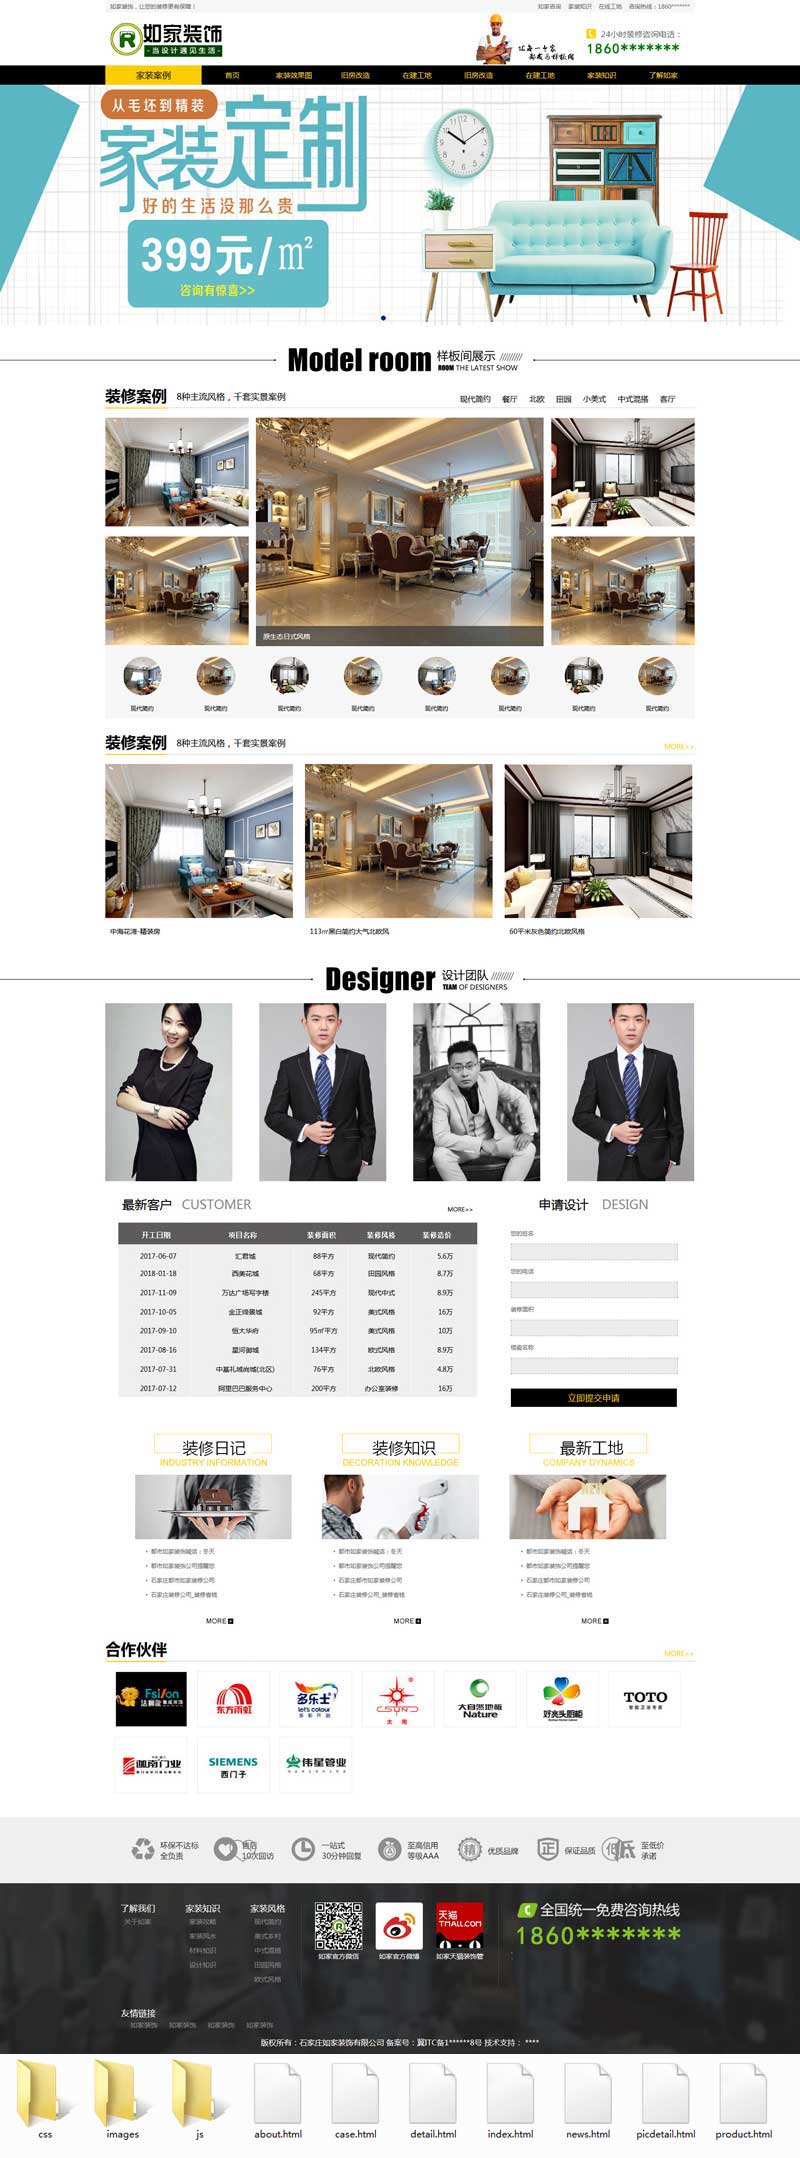 室内装修设计公司网站模板